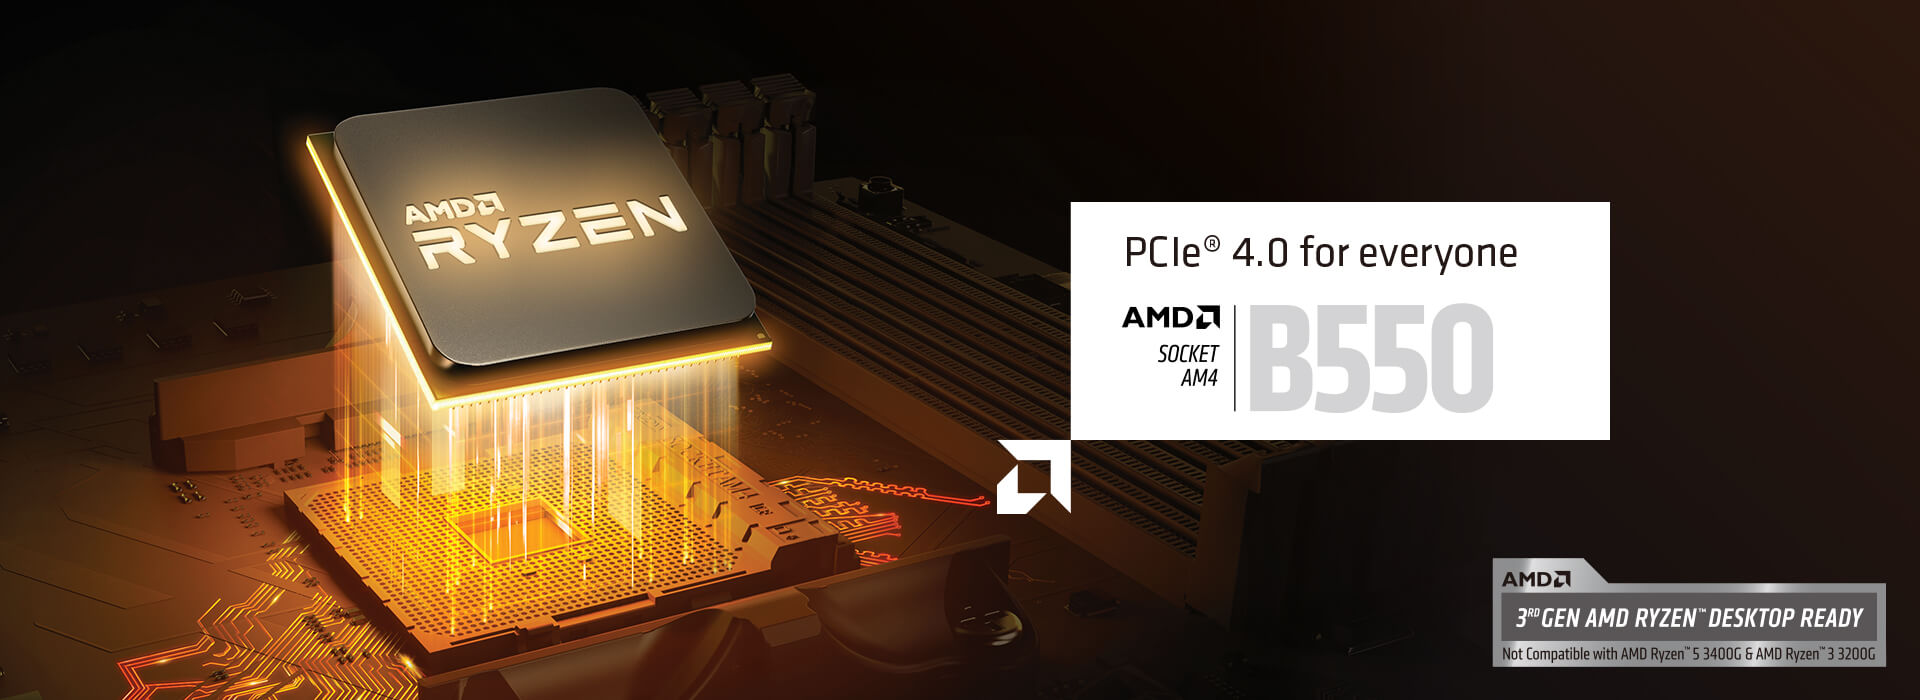 PCIe 4.0 für alle. AMD SOCKET AM4 B550. BEREIT FÜR DIE AMD-RYZEN-DESKTOP-CPUS DER 3. GENERATION. Nicht kompatibel mit dem AMD Ryzen 5 3400G & AMD Ryzen 3 3200G.